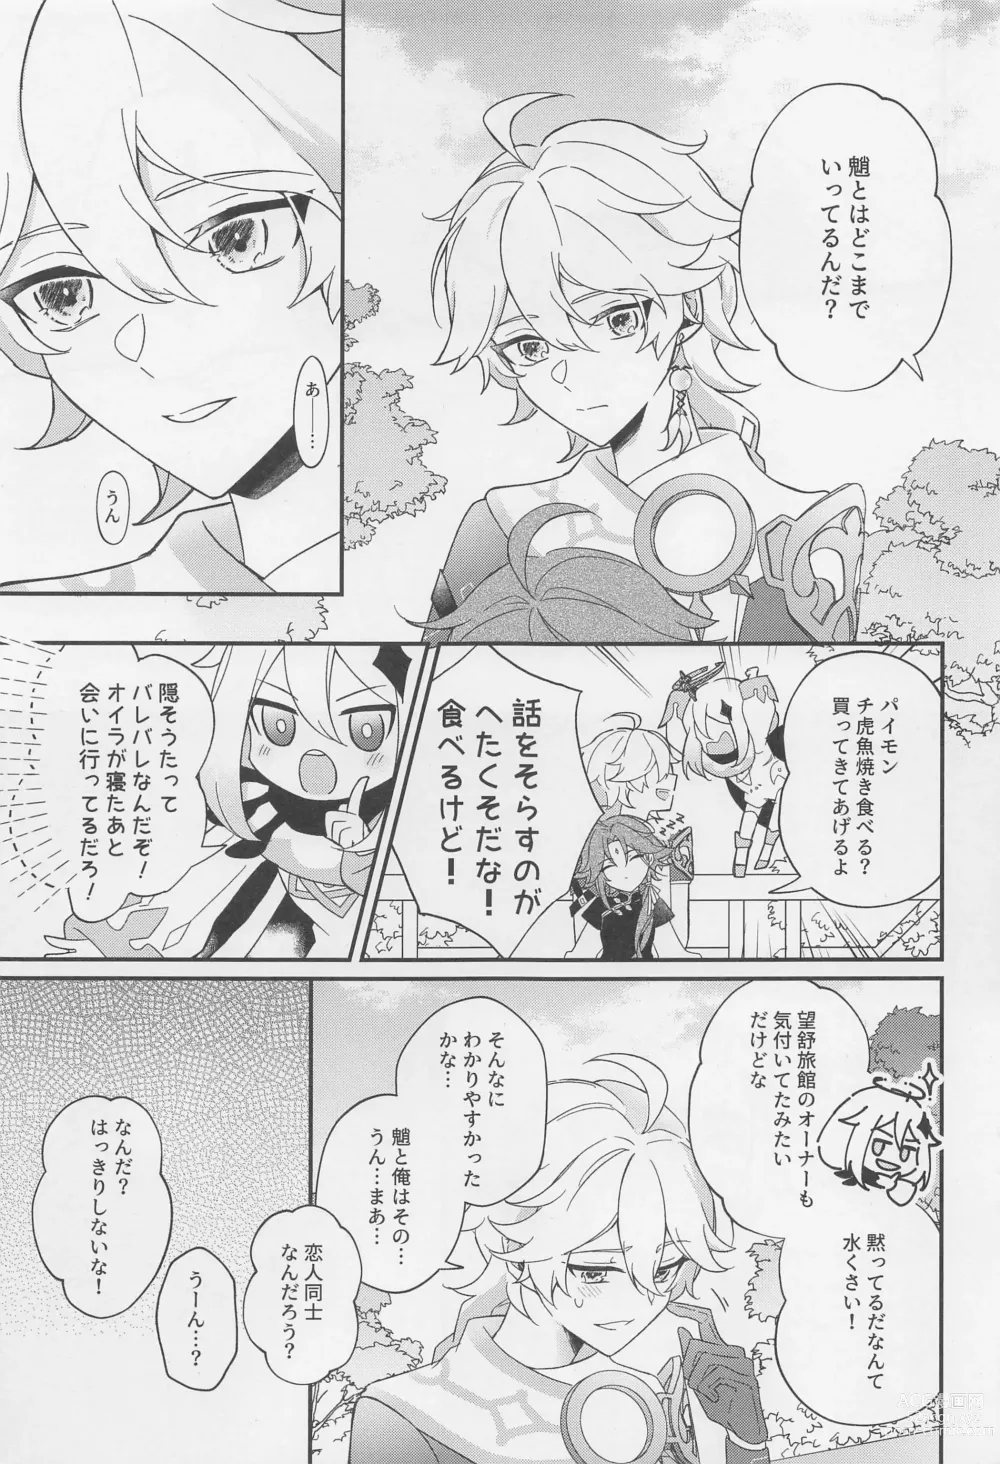 Page 14 of doujinshi Kimi o Wazurau